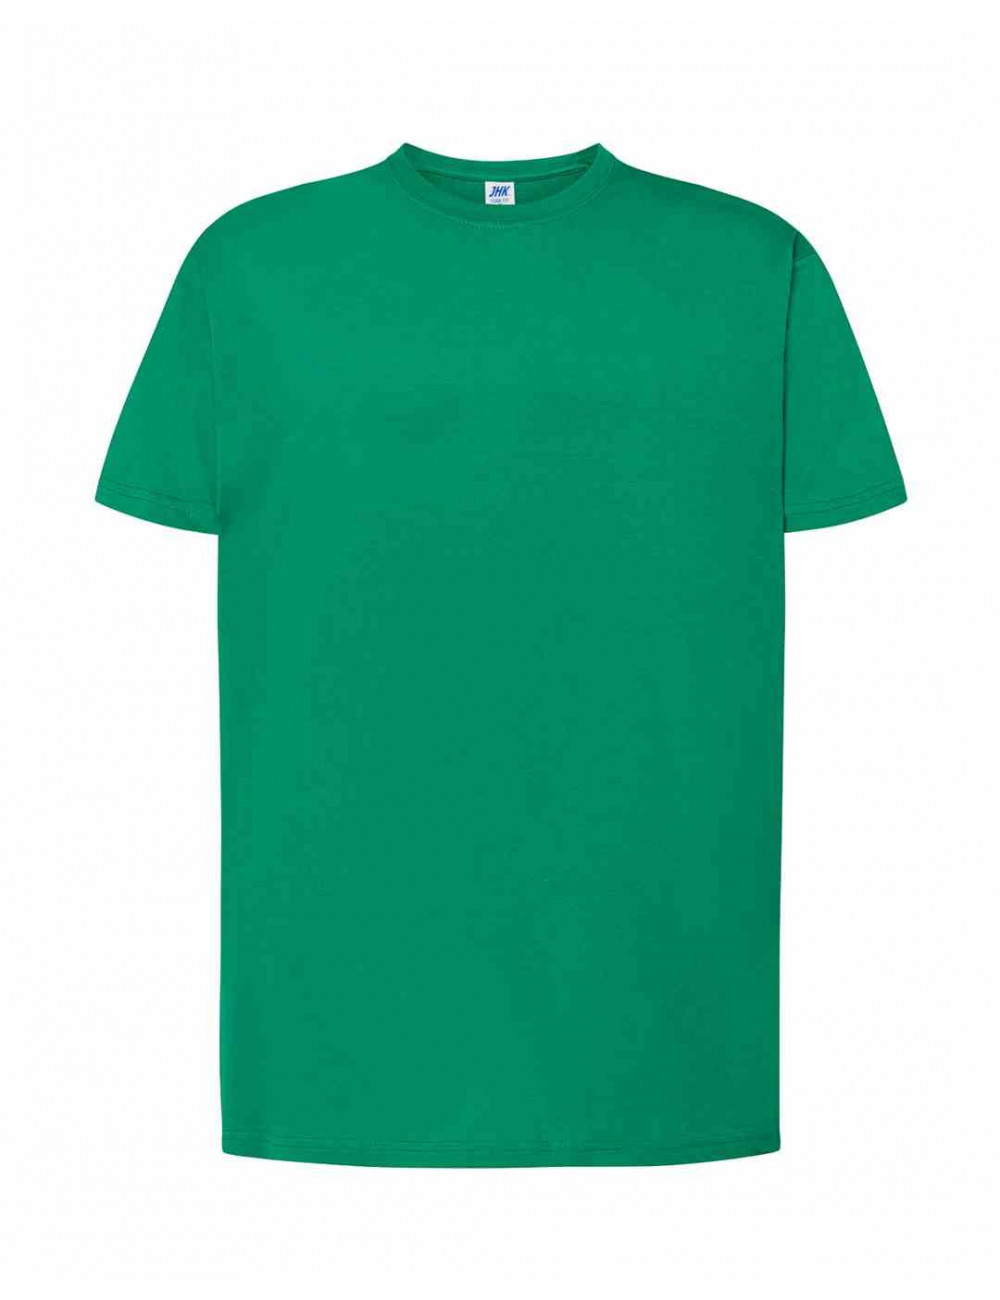 Koszulka męska tsra 150 regular t-shirt kg - kelly green Jhk